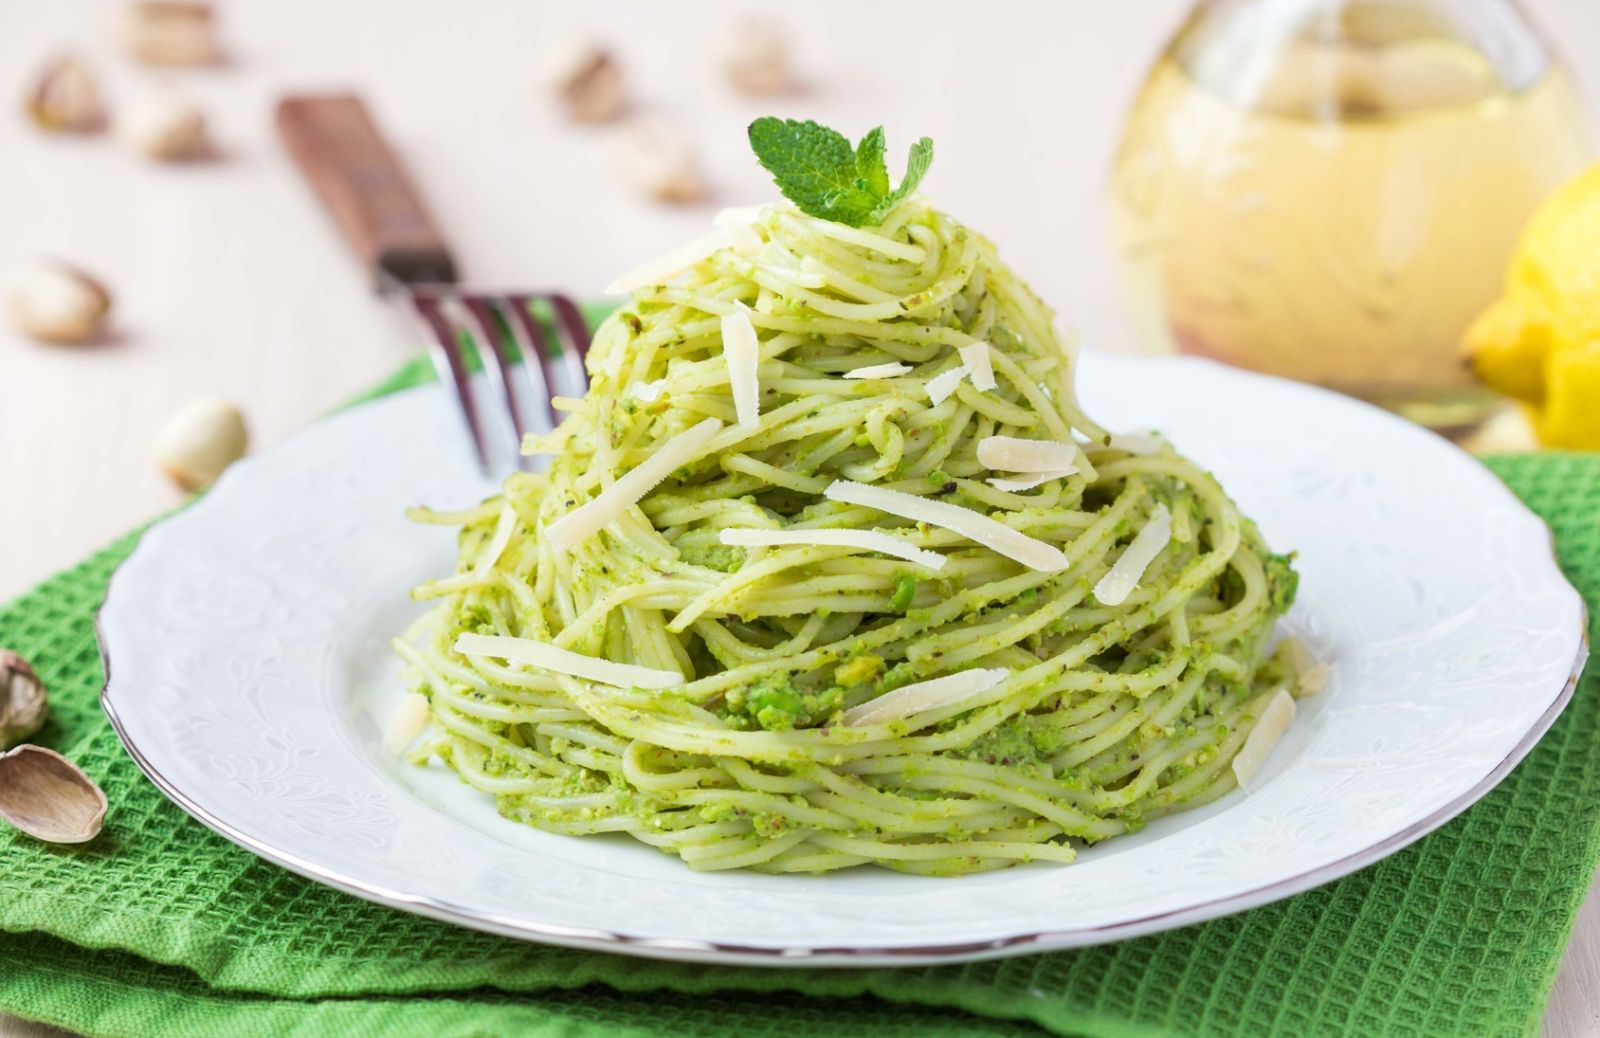 Tendenza vegan: il cestino di spaghetti verdi con pesto veg è tutto da provare!